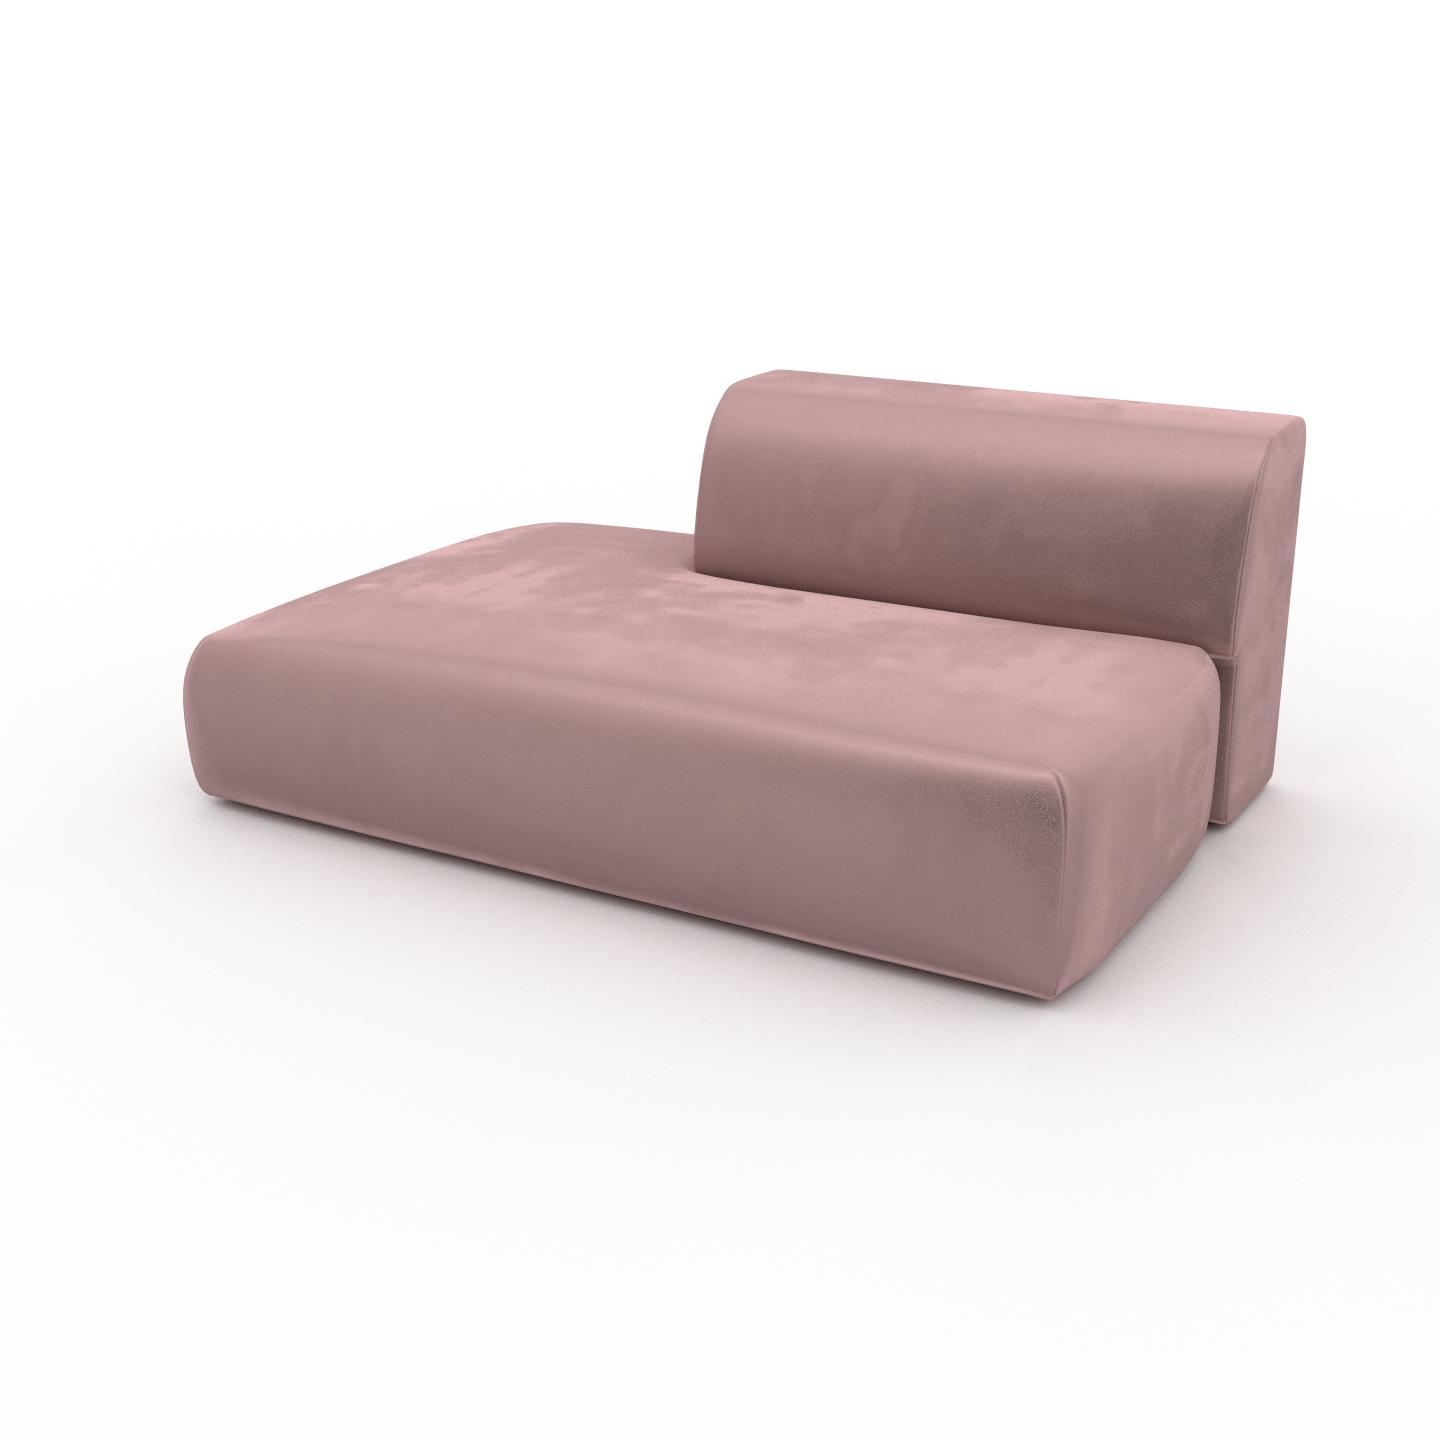 MYCS Sofa 2-Sitzer Samt Bonbonrosa Samt - Elegantes, gemütliches 2-Sitzer Sofa: Hochwertige Qualität, einzigartiges Design - 162 x 72 x 107 cm,...